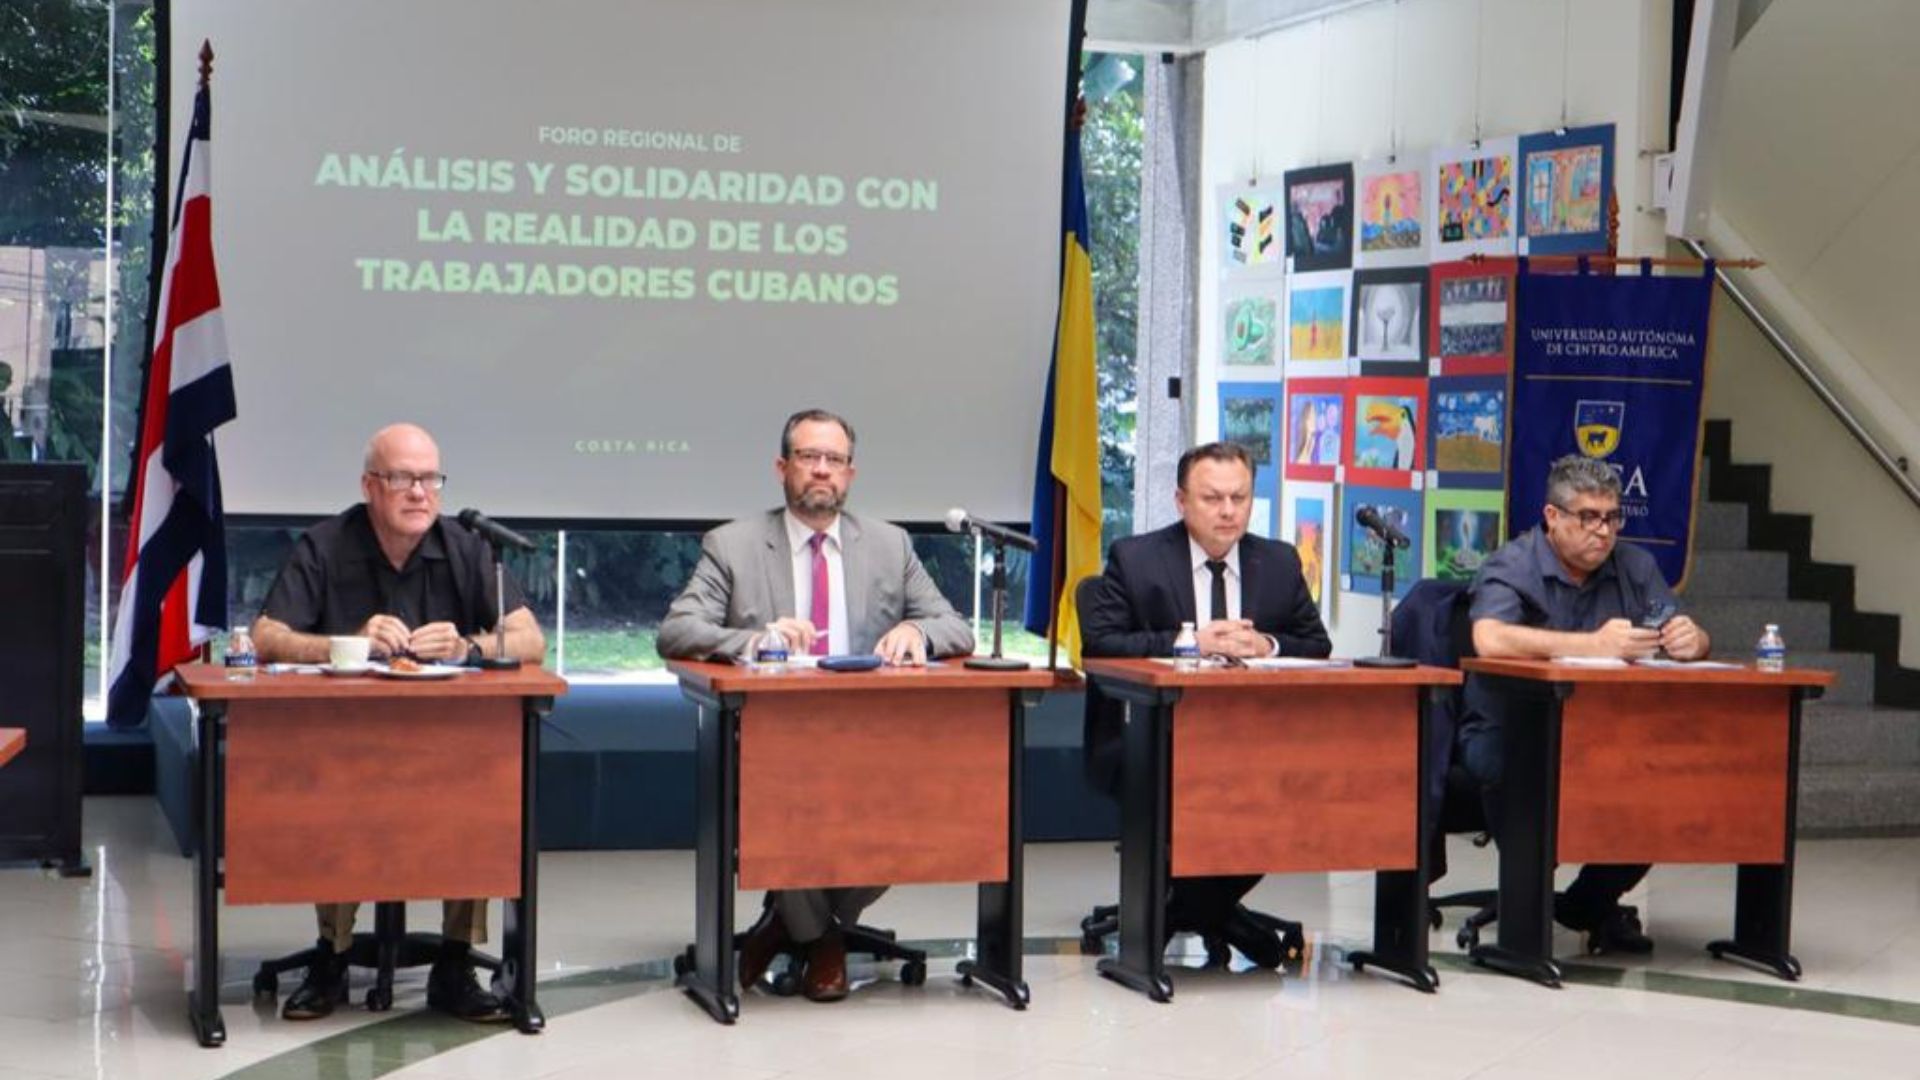 El encuentro estuvo dedicado a los cuatro presos políticos sindicalistas en Cuba: Alexei Rodríguez Martínez; Walfrido Rodríguez Piloto, Humberto Bello Laffita y Yunier Herrera Rodríguez